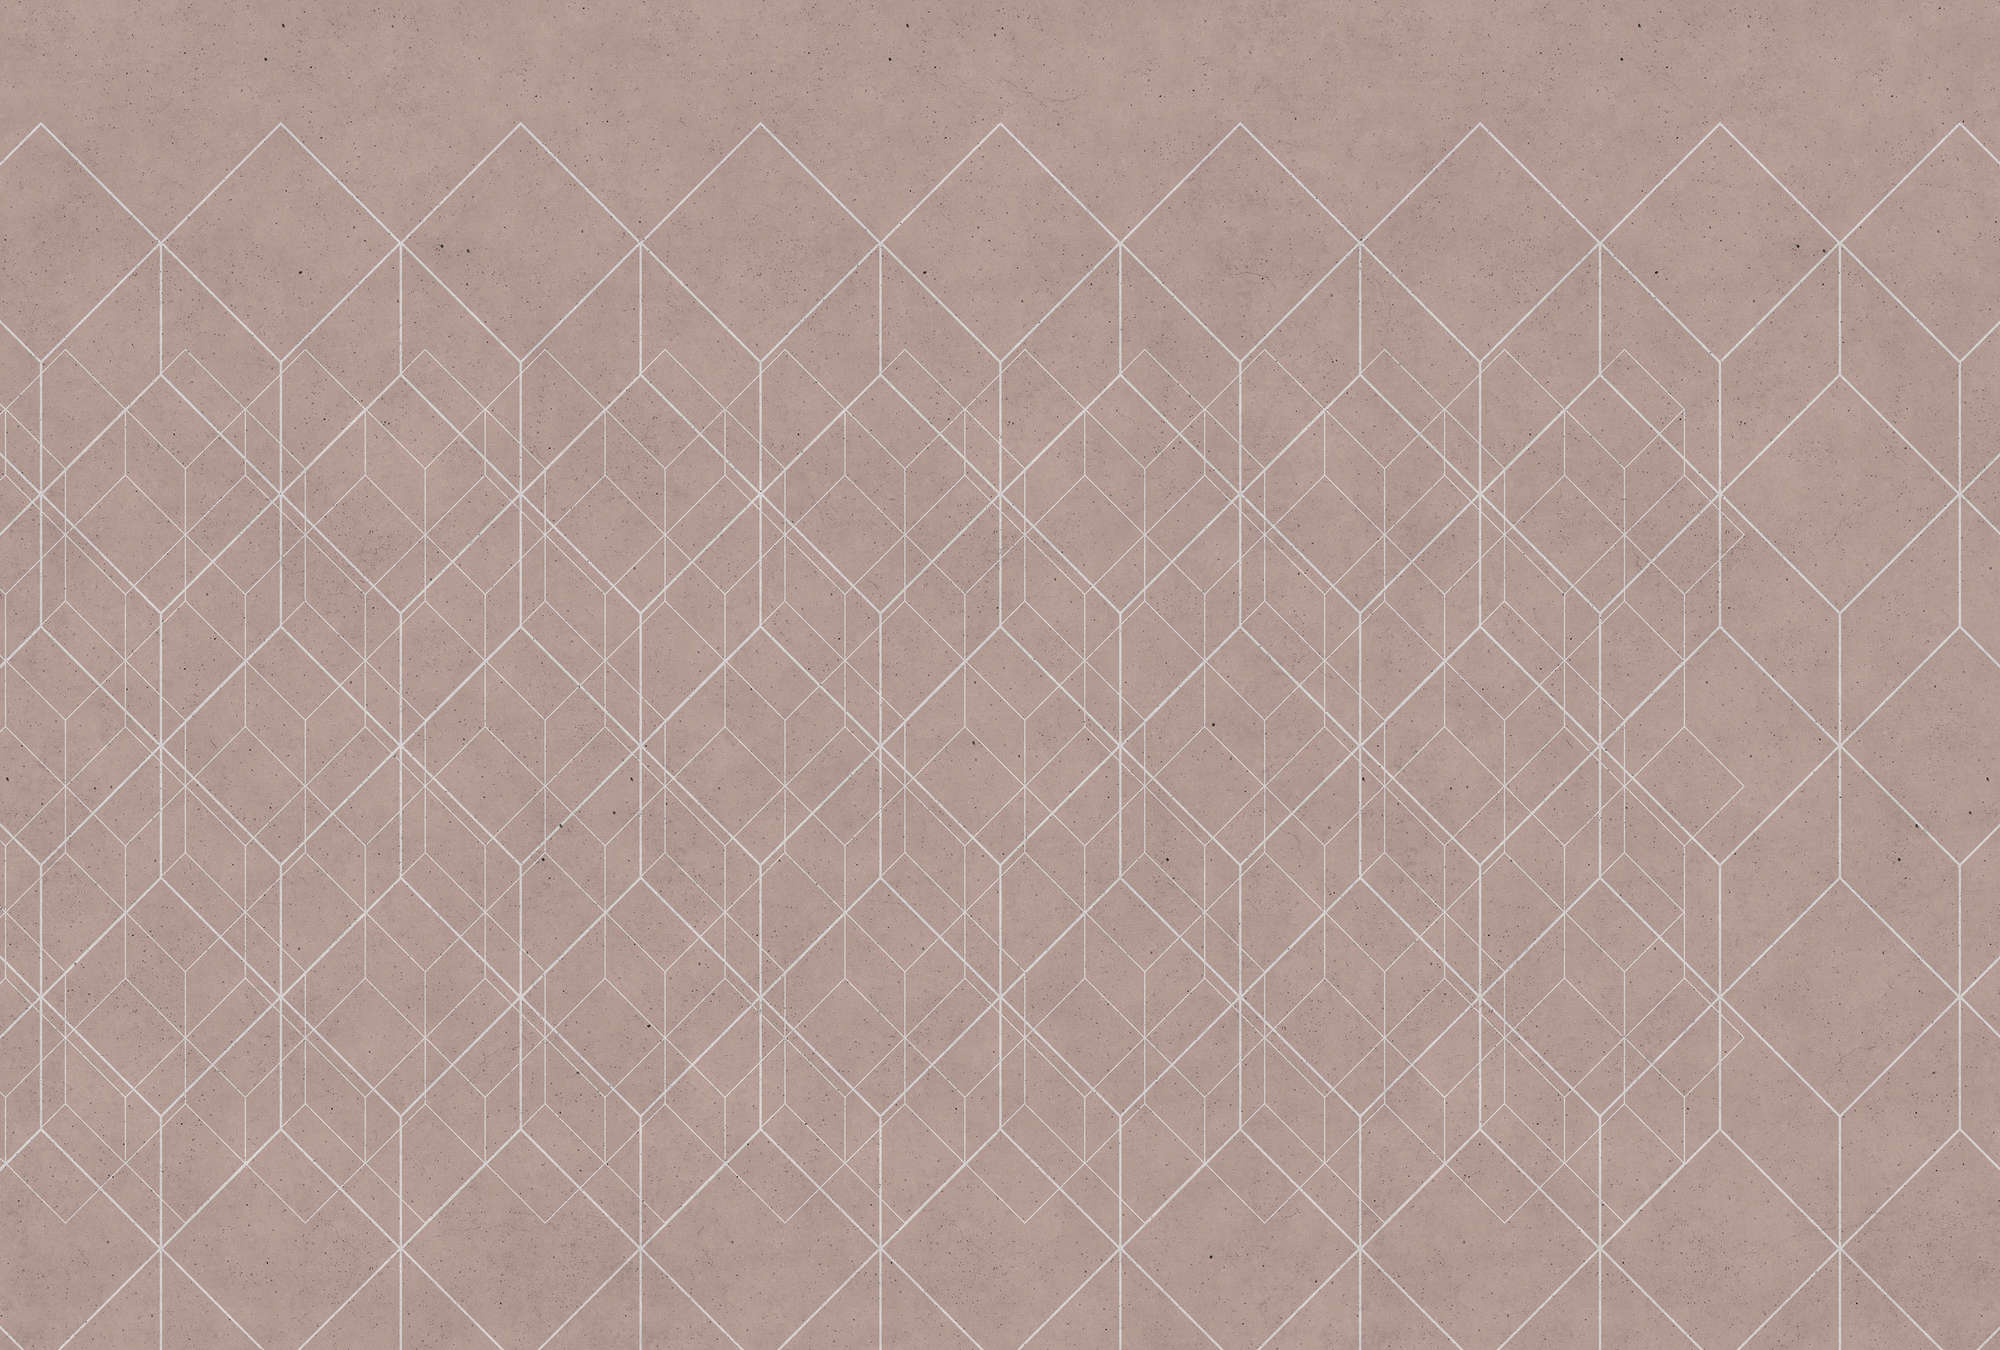             Muurschildering geometrisch patroon - Beige, Wit
        